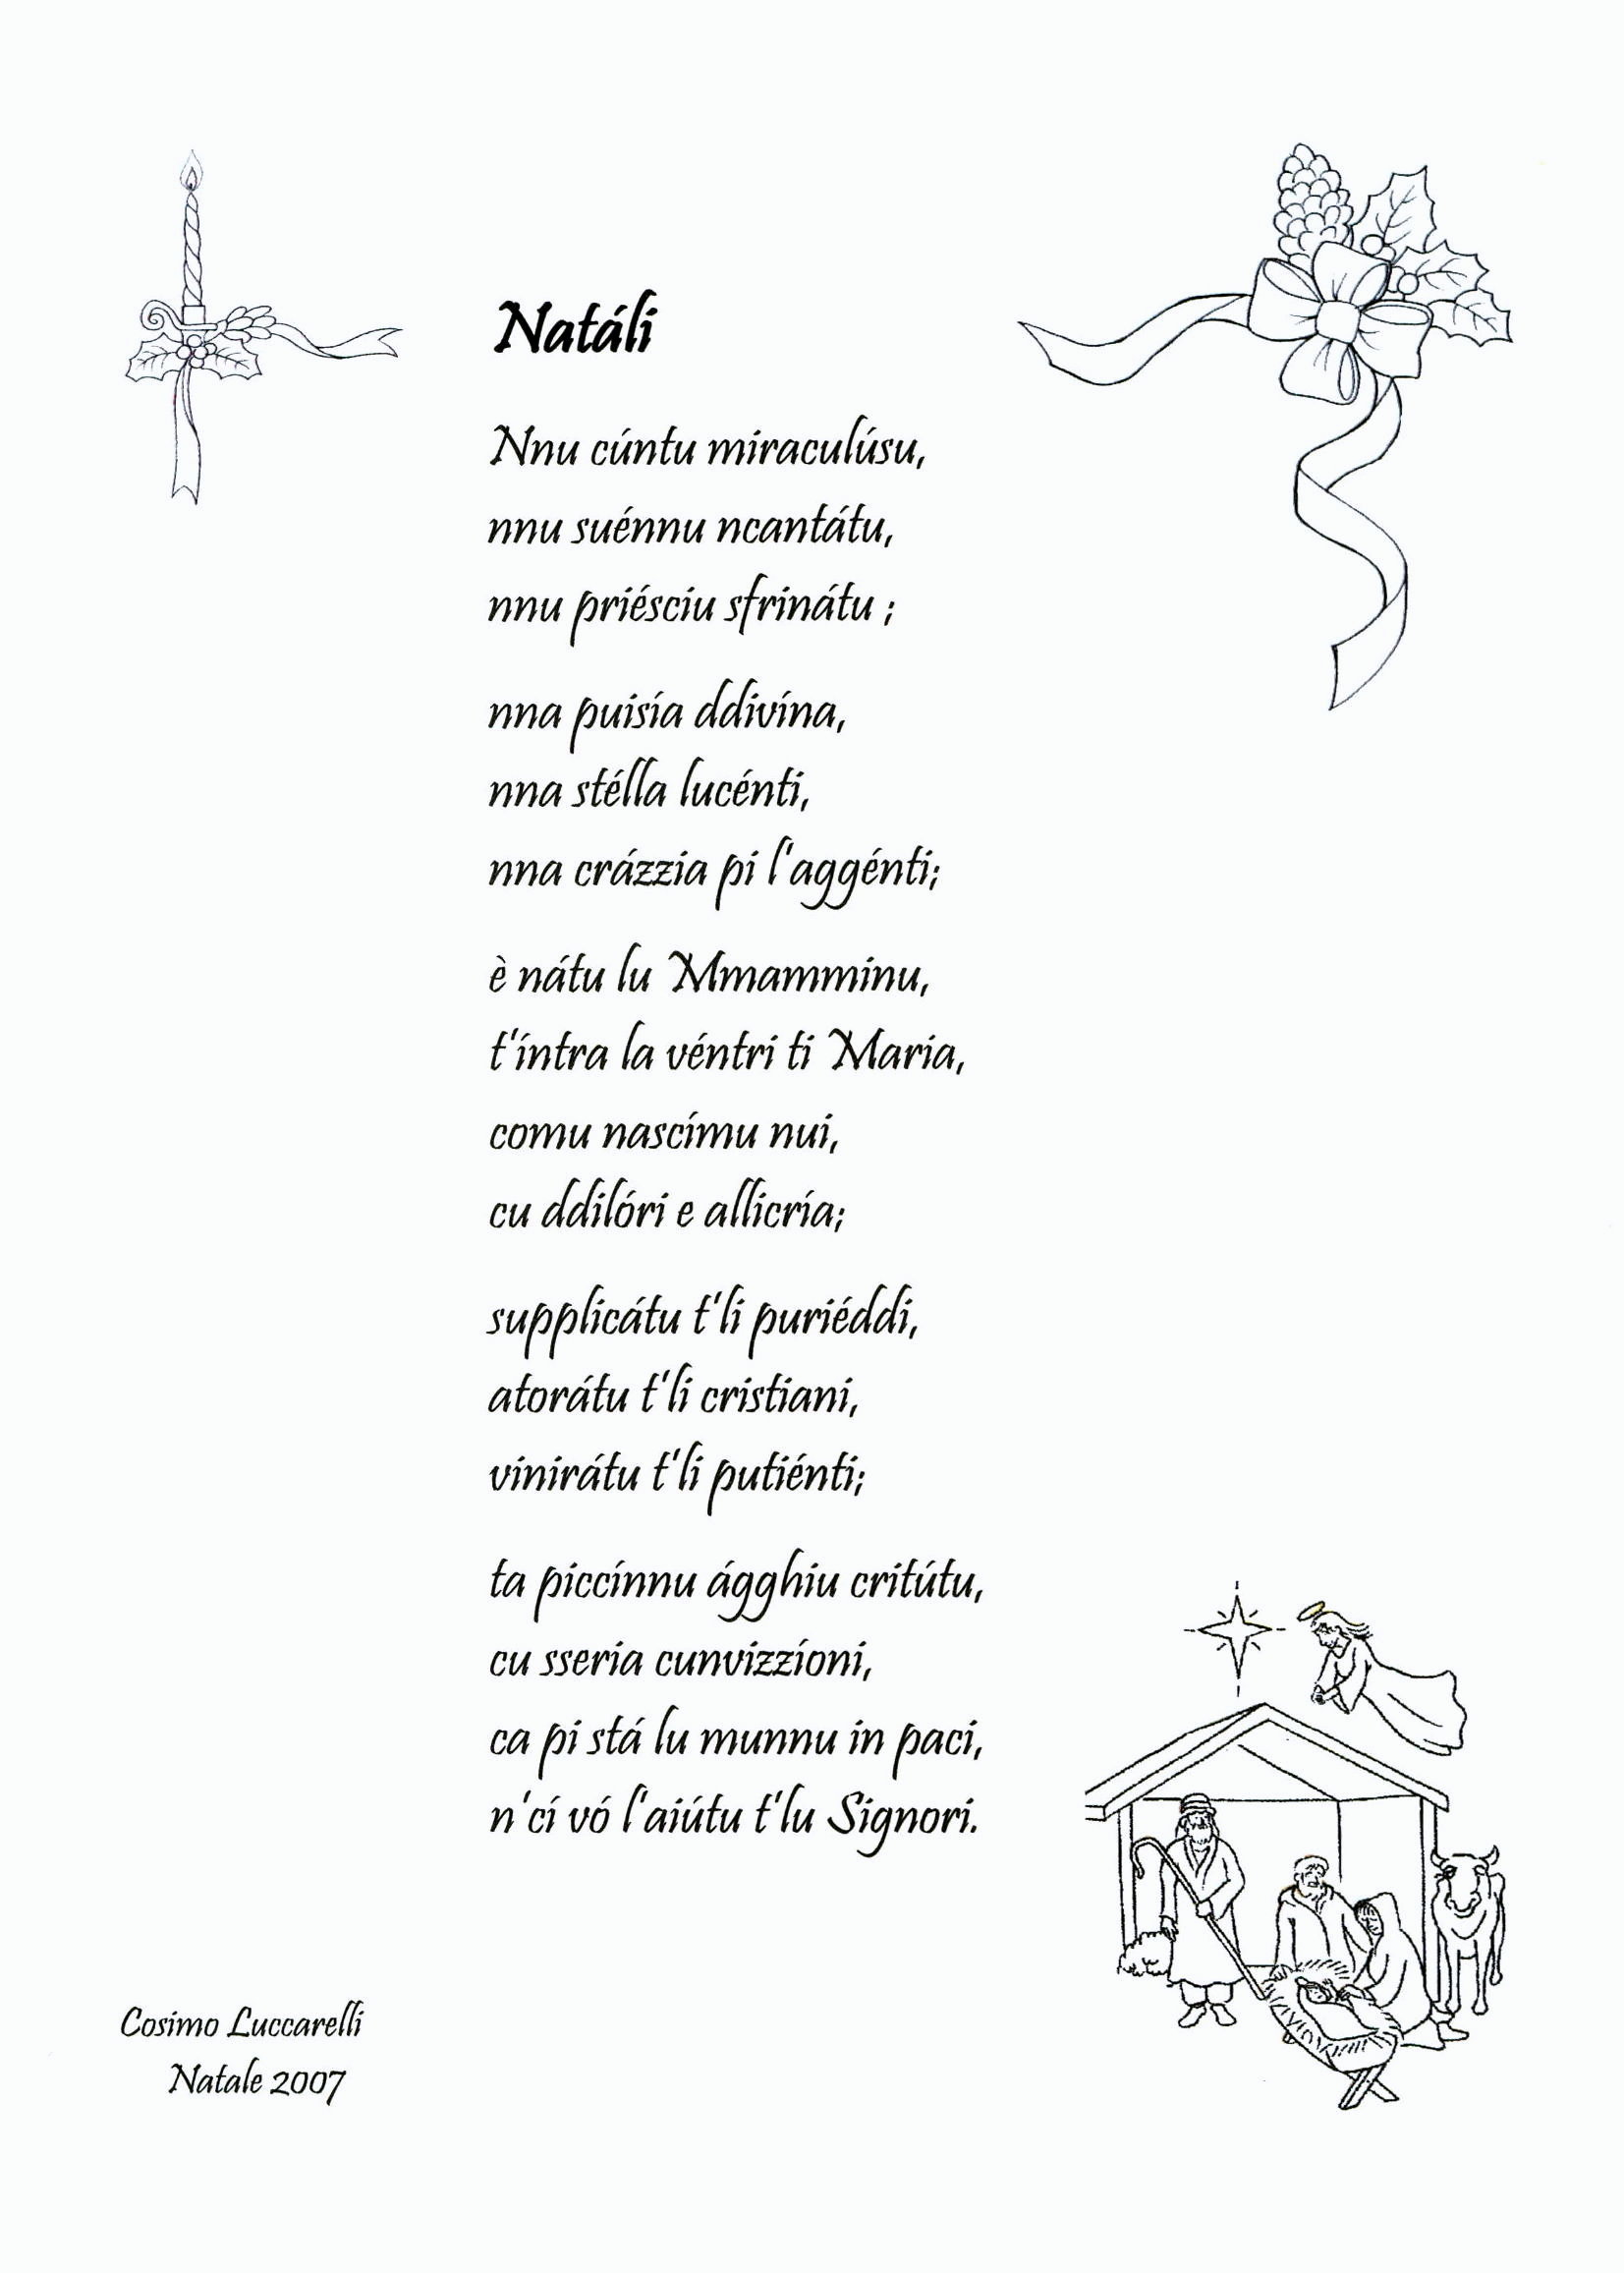 Poesie Di Natale In Dialetto Siciliano.Antologia Di Poesie Dialettali Per Natale Grottagliesita Blog